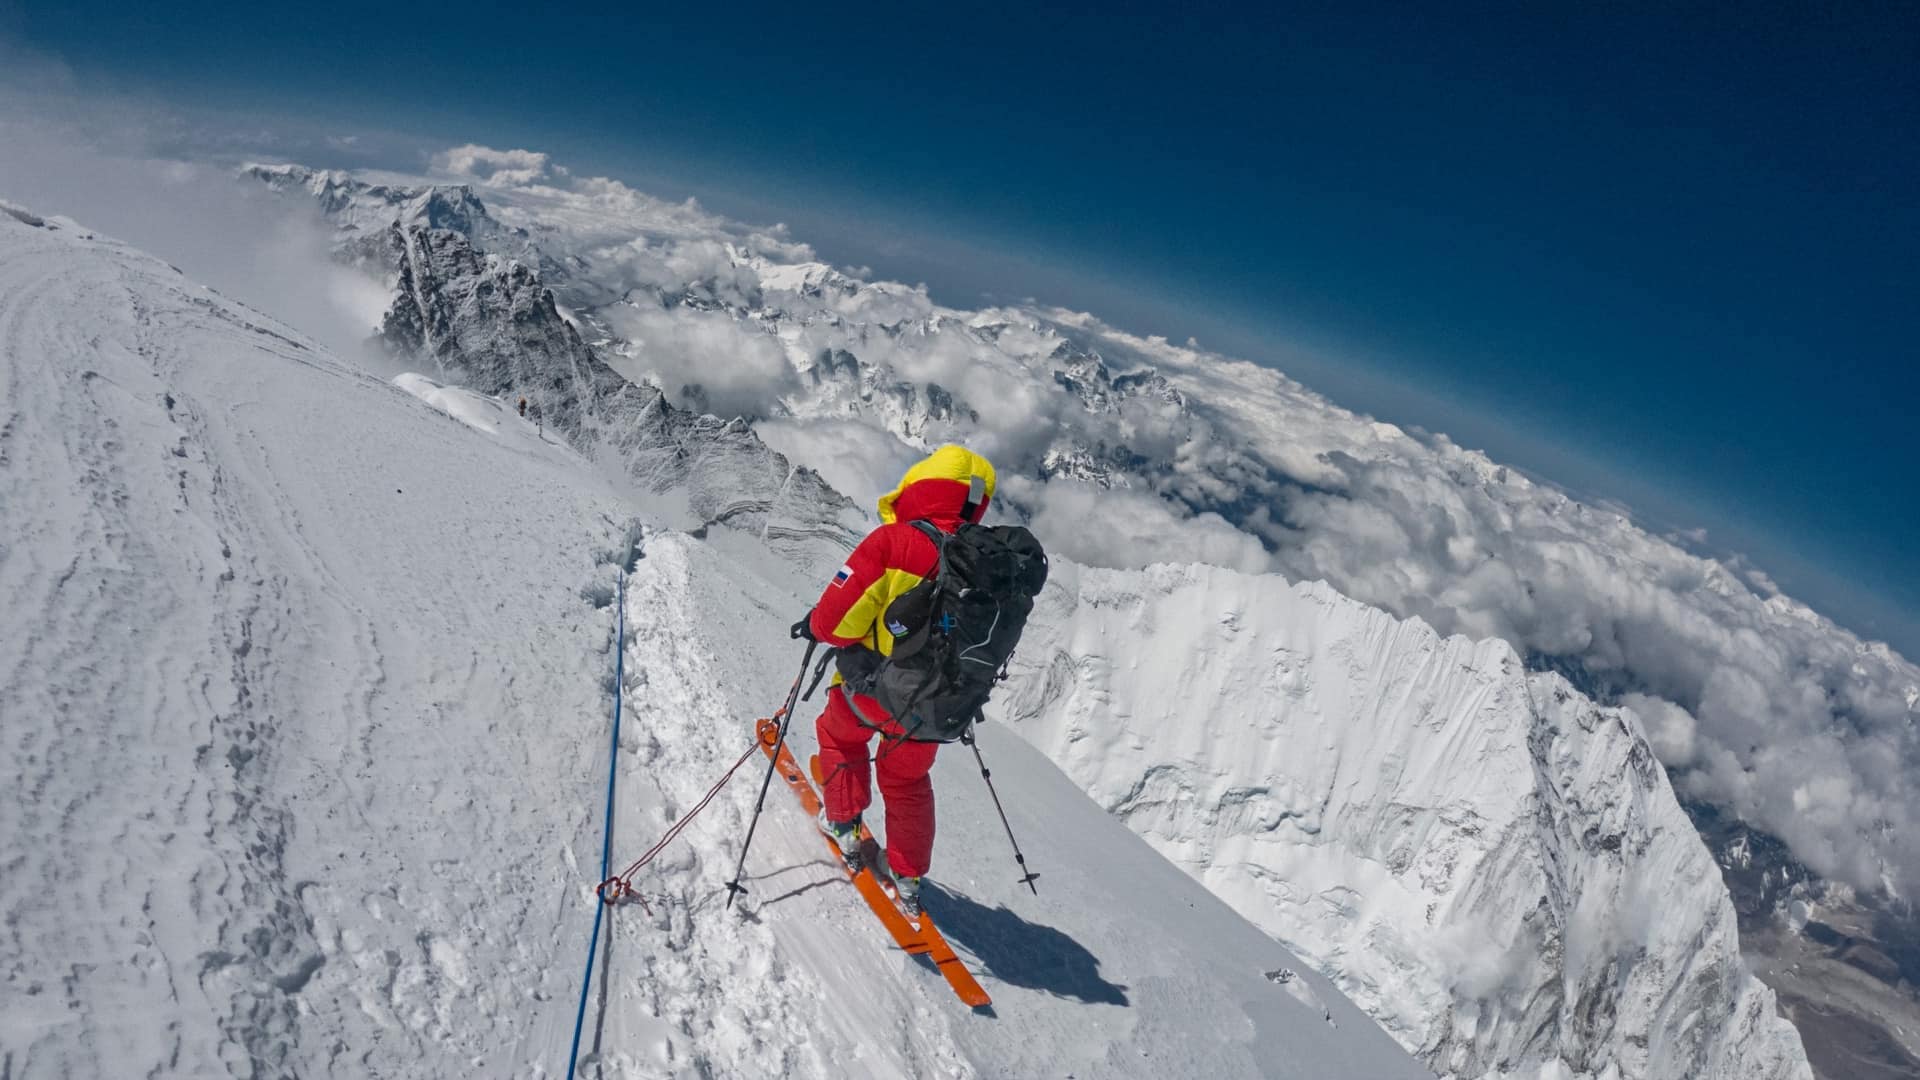 Primer descenso de la cima del Everest con esquís y sin oxígeno suplementario